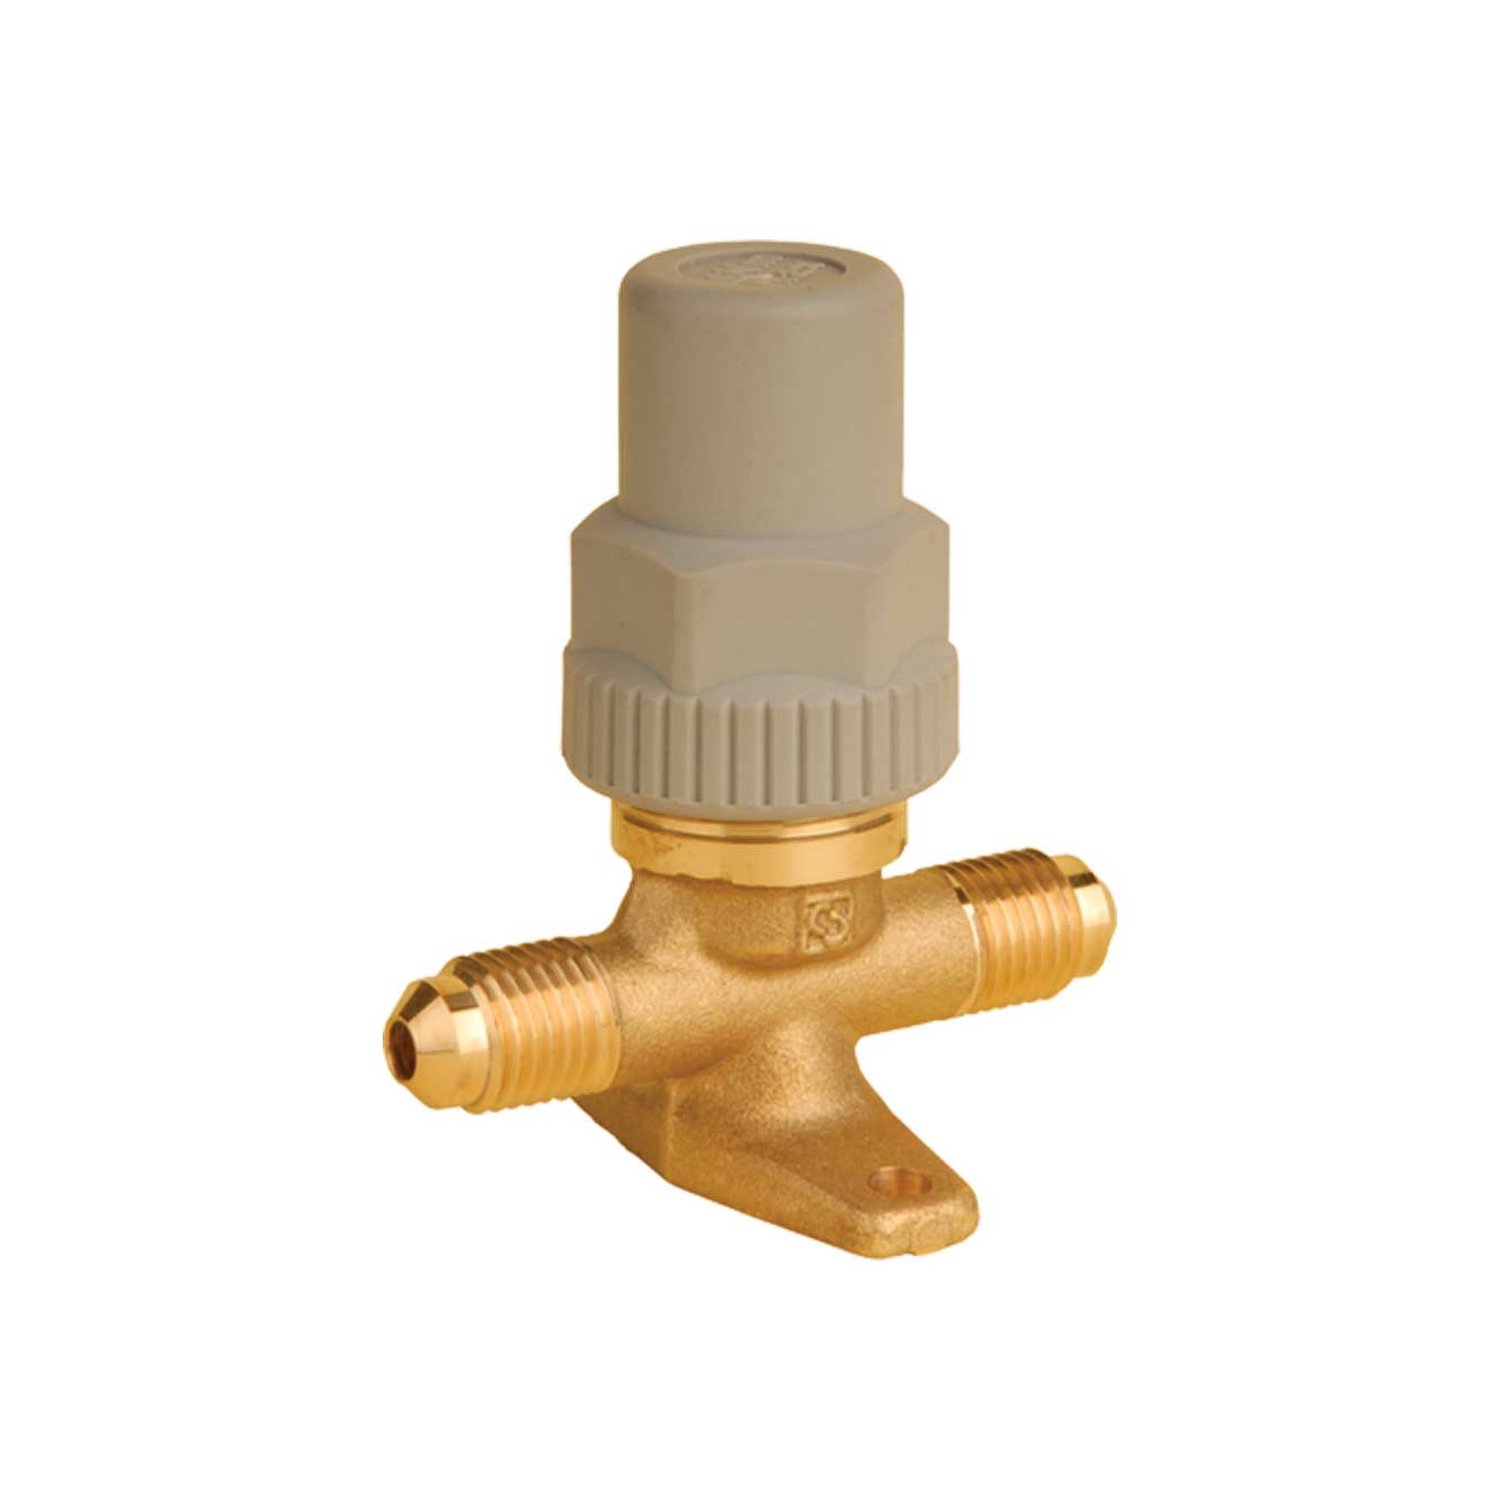 Shut-off valve Castel 6410/6, 3/4 "SAE